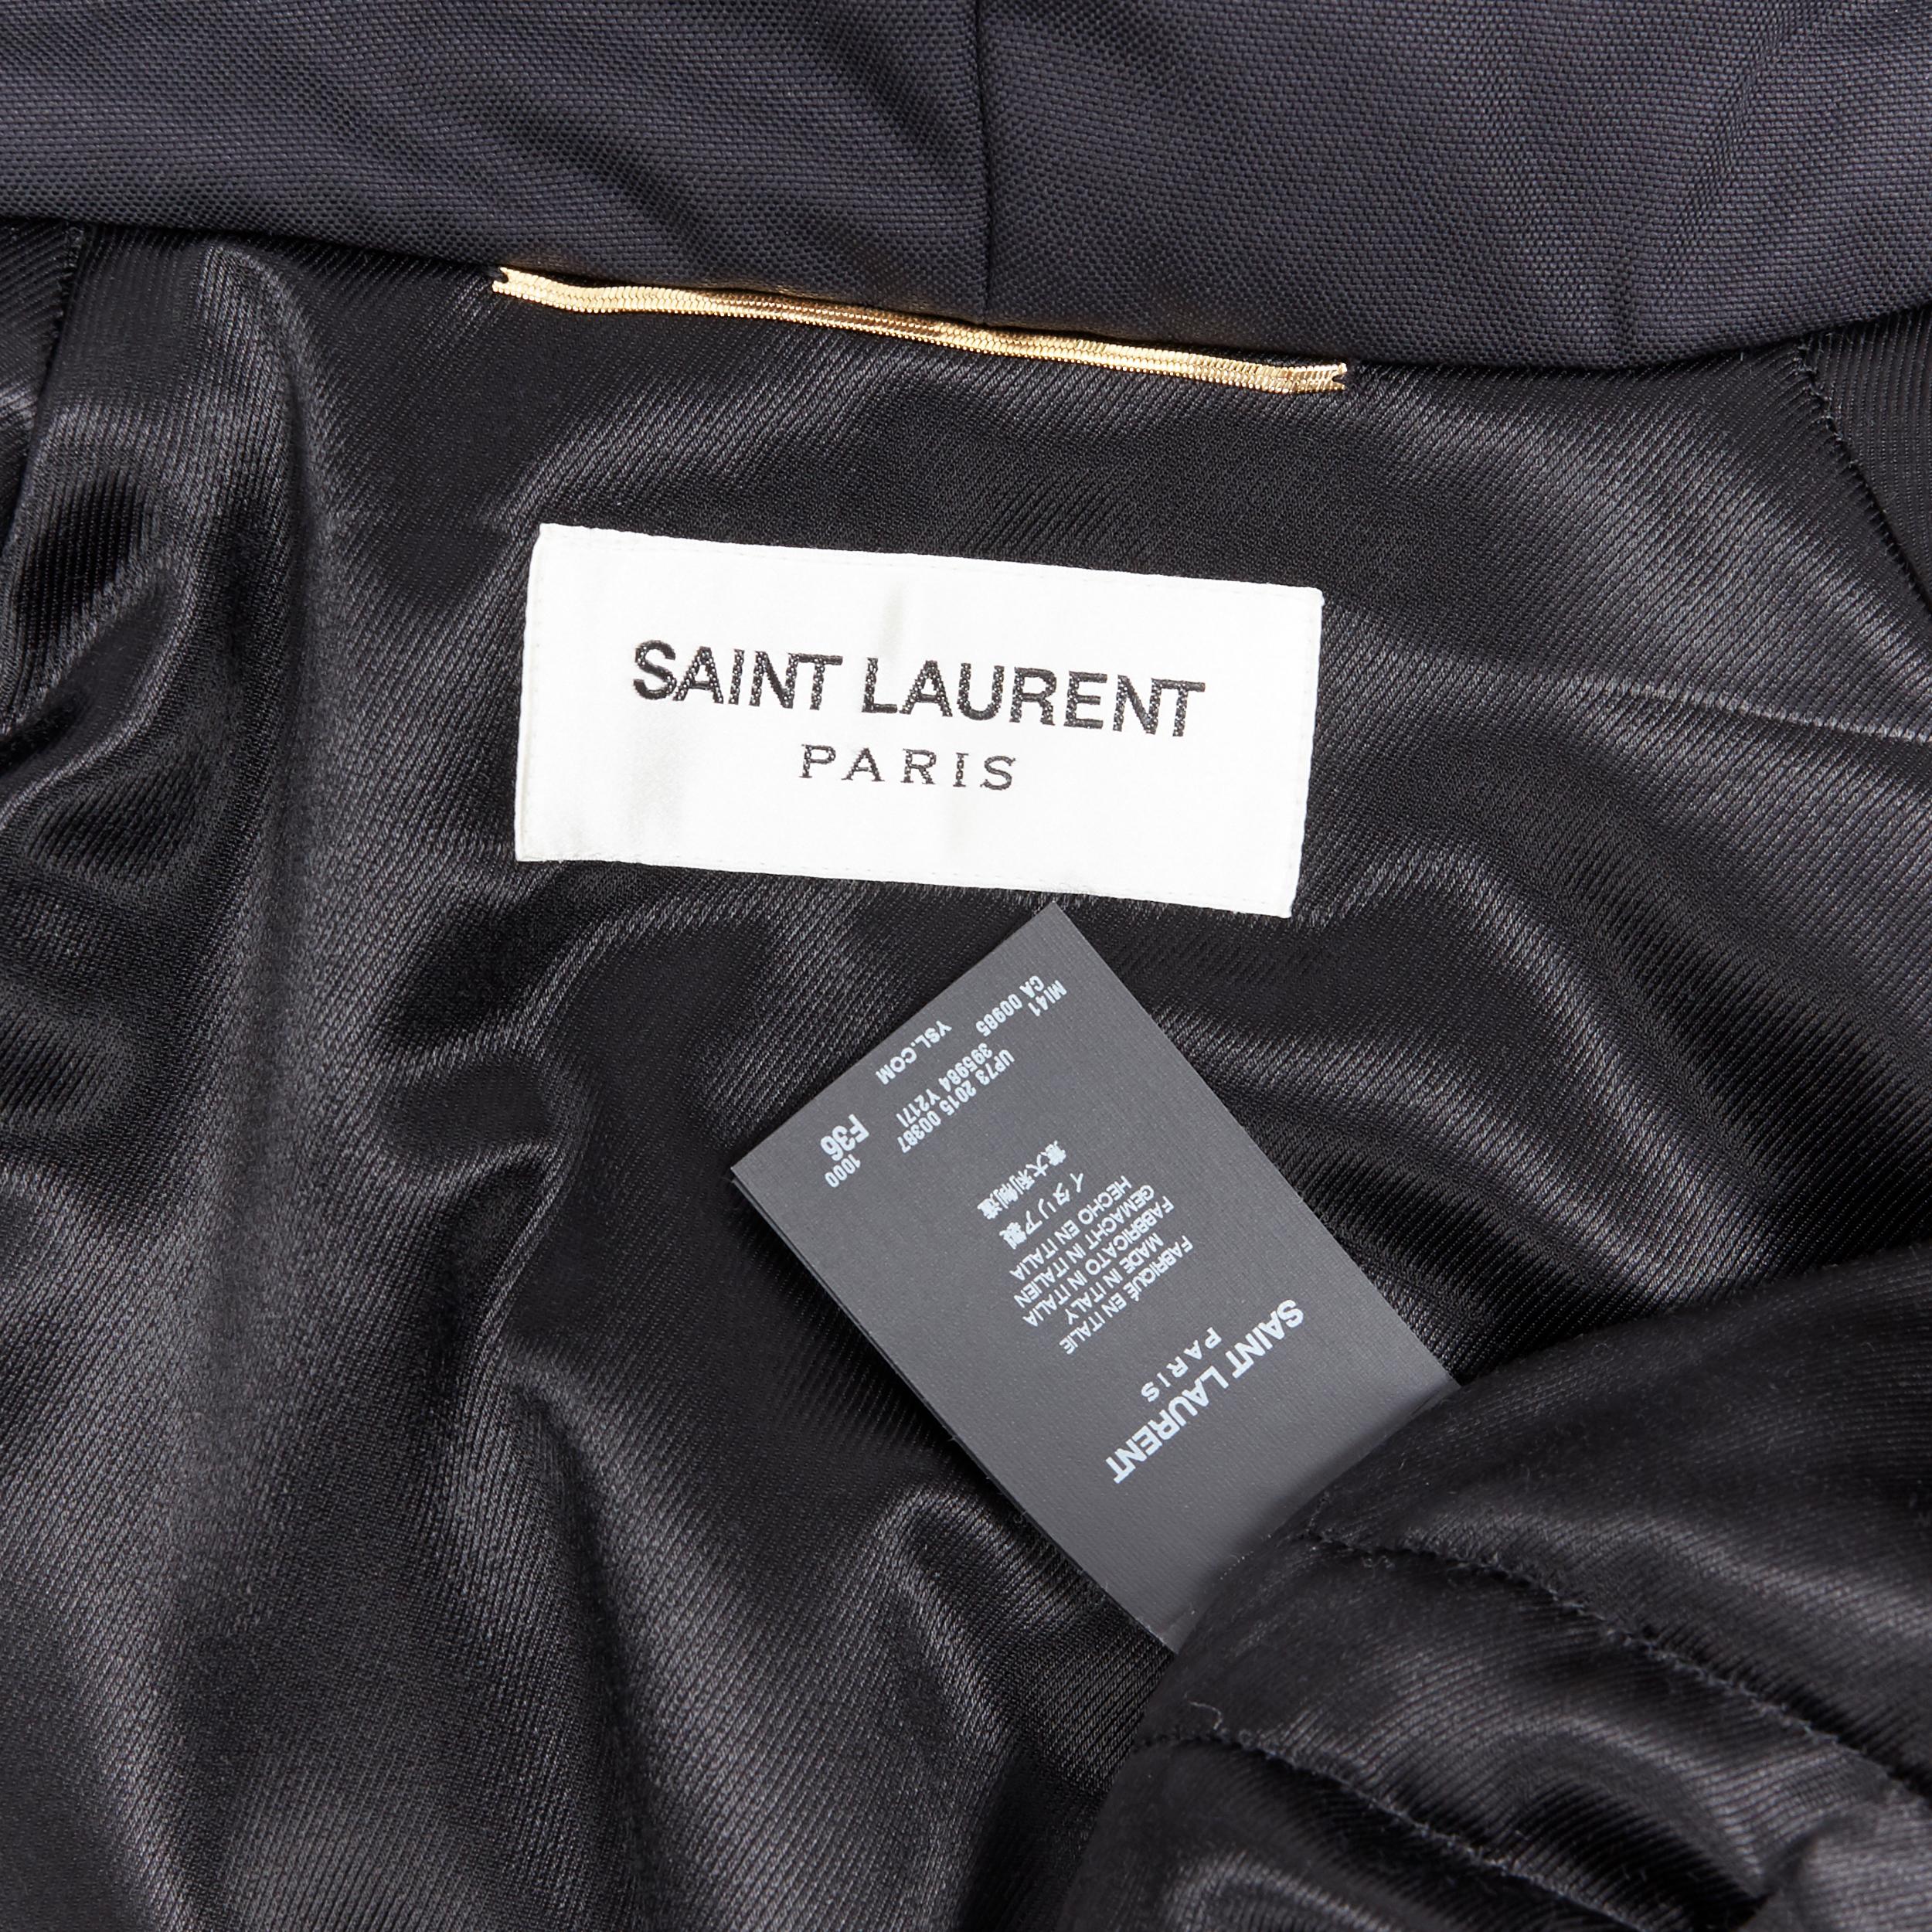 SAINT LAURENT HEDI SLIMANE 2015 black nylon zip front hooded parka coat FR36 7